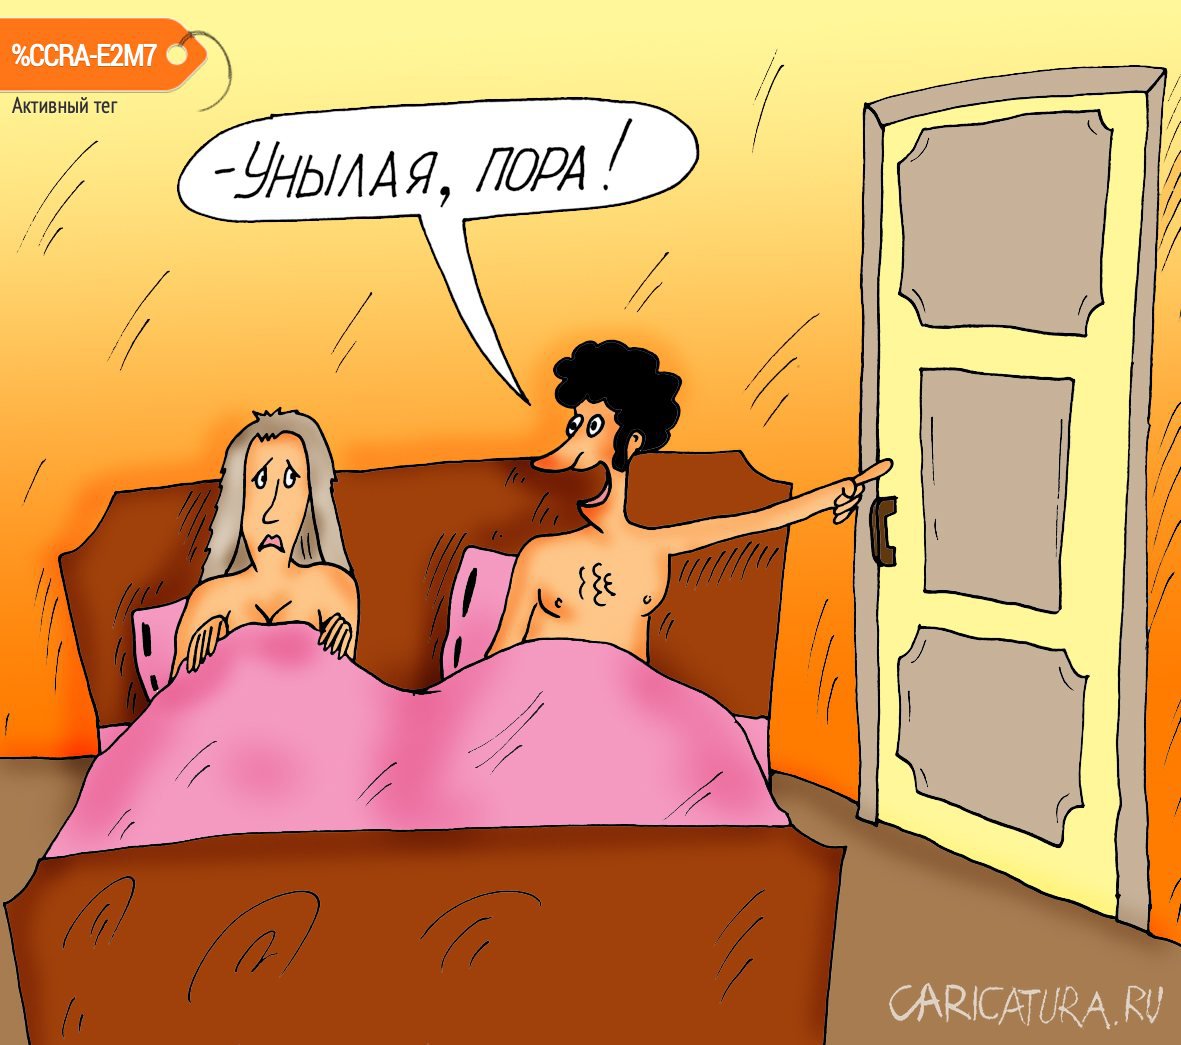 Карикатура "Унылая", Алексей Булатов